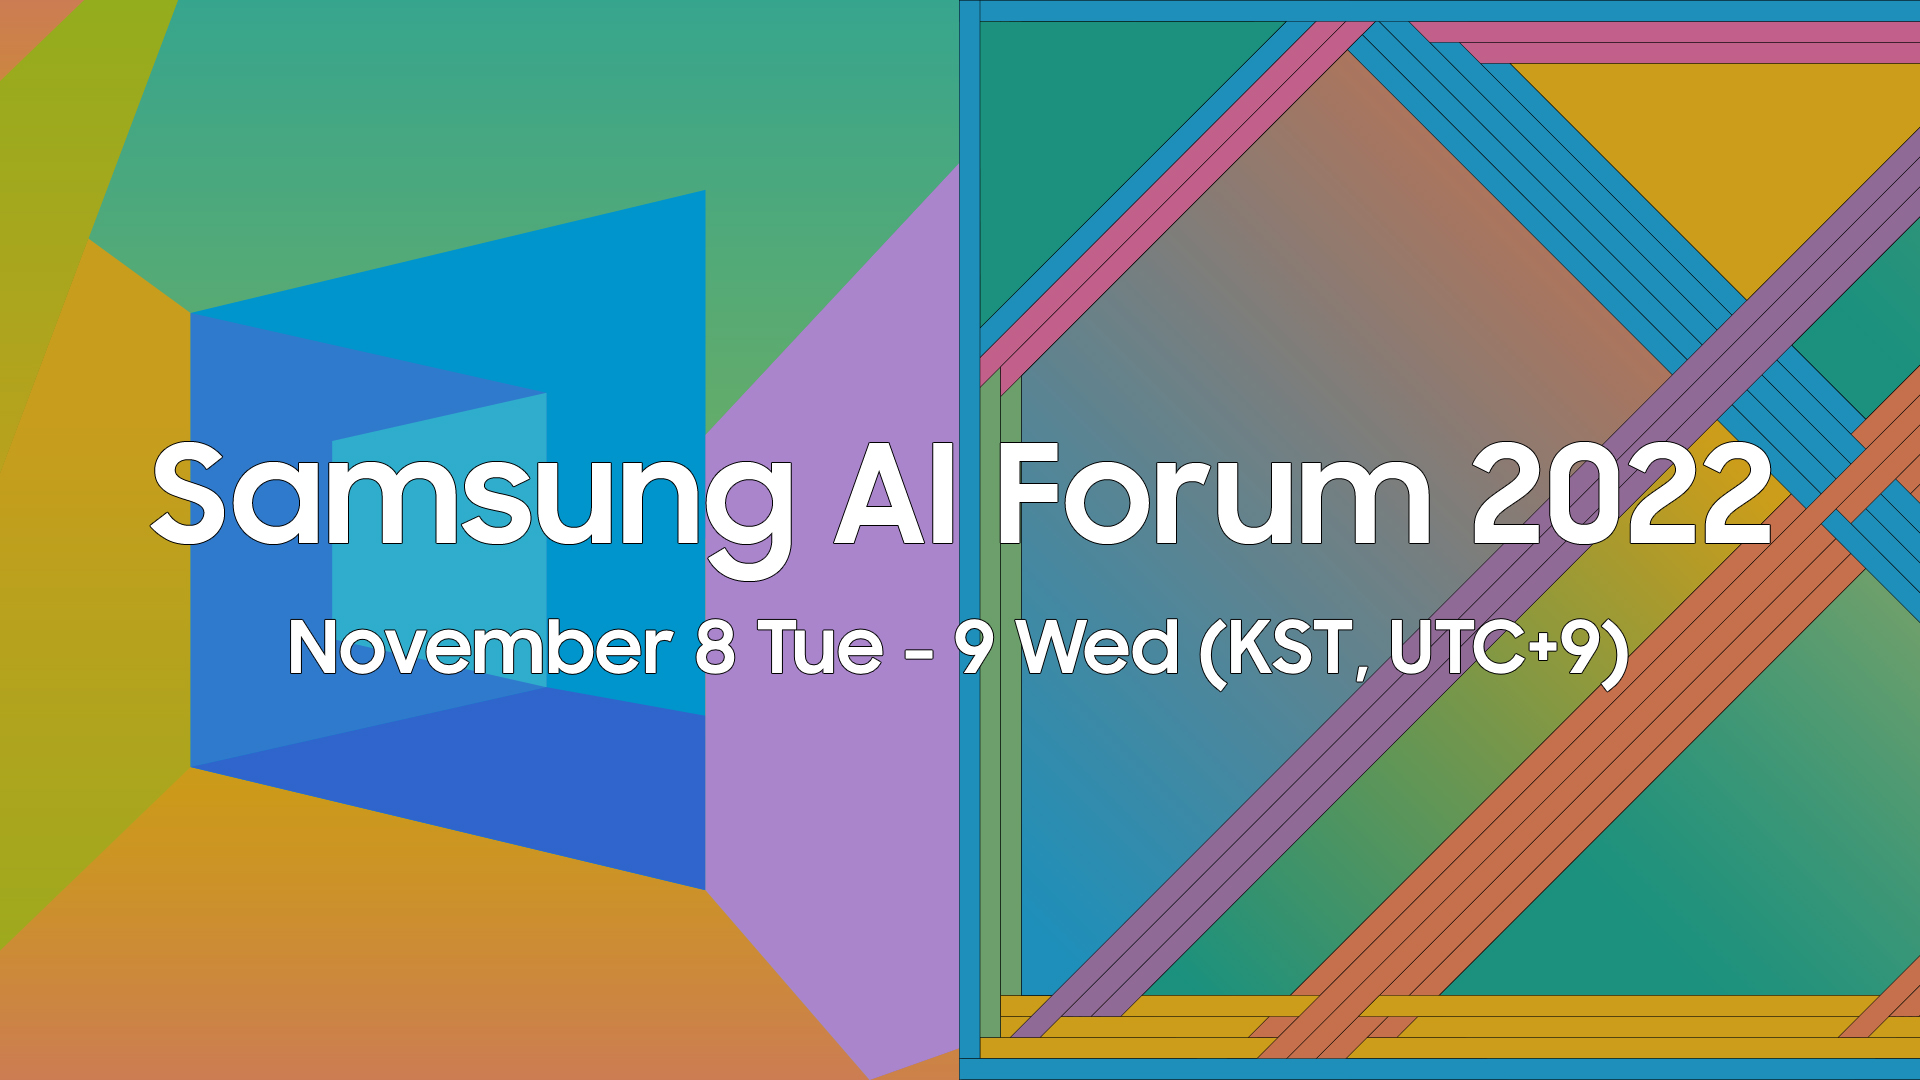 Samsung AI Forum 2022, yapay zeka (AI) teknolojilerinin geleceğine yön verecek!